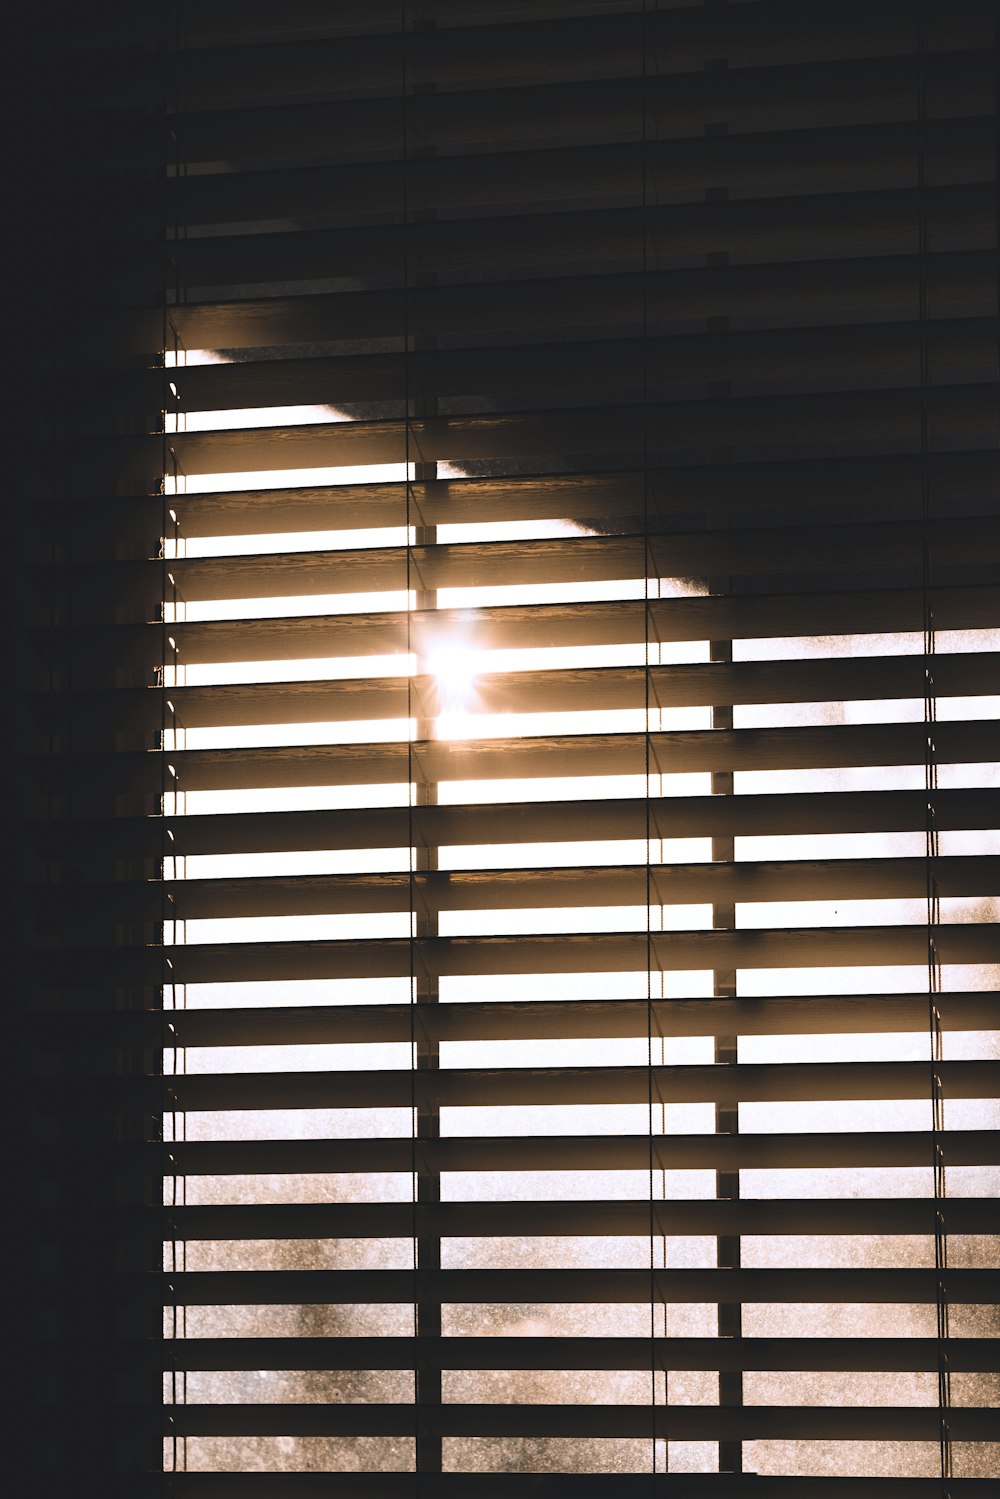 o sol está brilhando através das persianas de uma janela